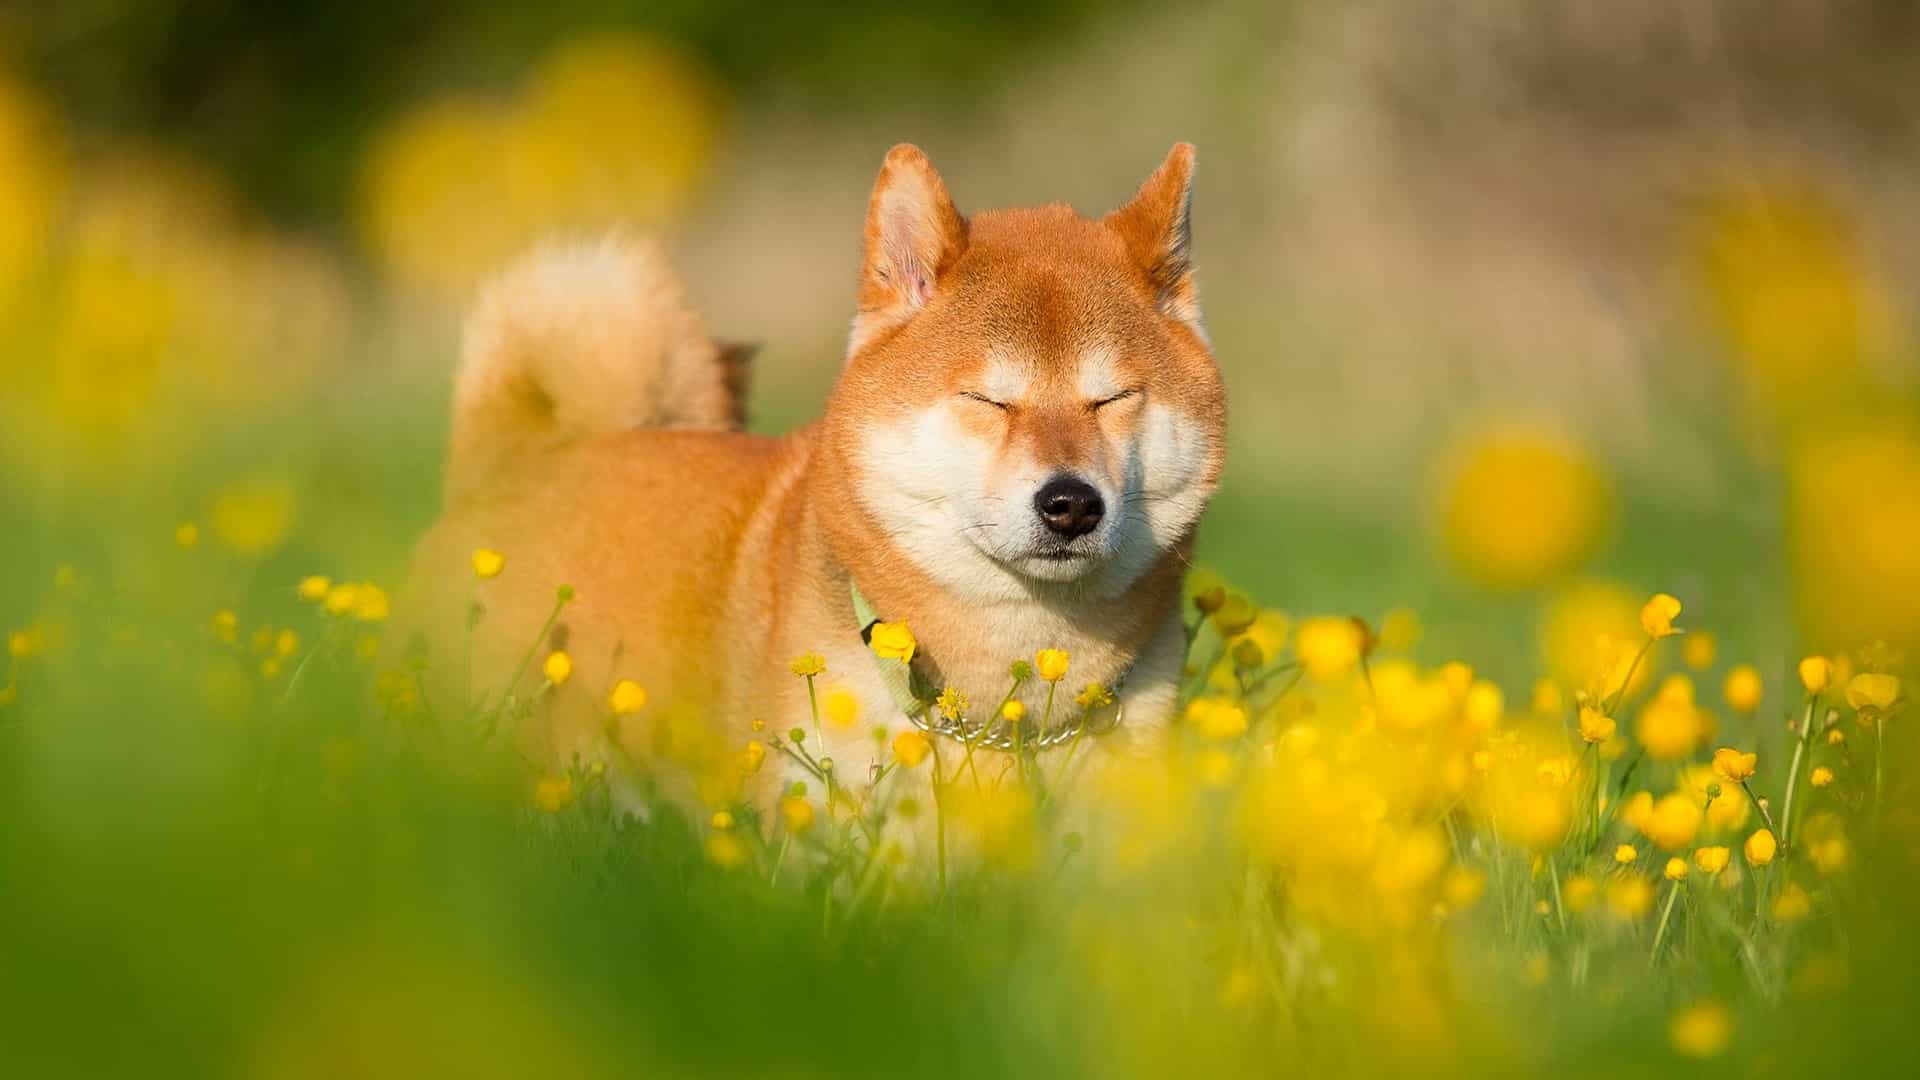 Tìm kiếm những Hình Ảnh Chó Shiba thú vị để tạo niềm vui cho ngày của bạn. Với những bức ảnh độc đáo và hài hước, bạn sẽ tràn đầy năng lượng và sáng tạo hơn bao giờ hết.